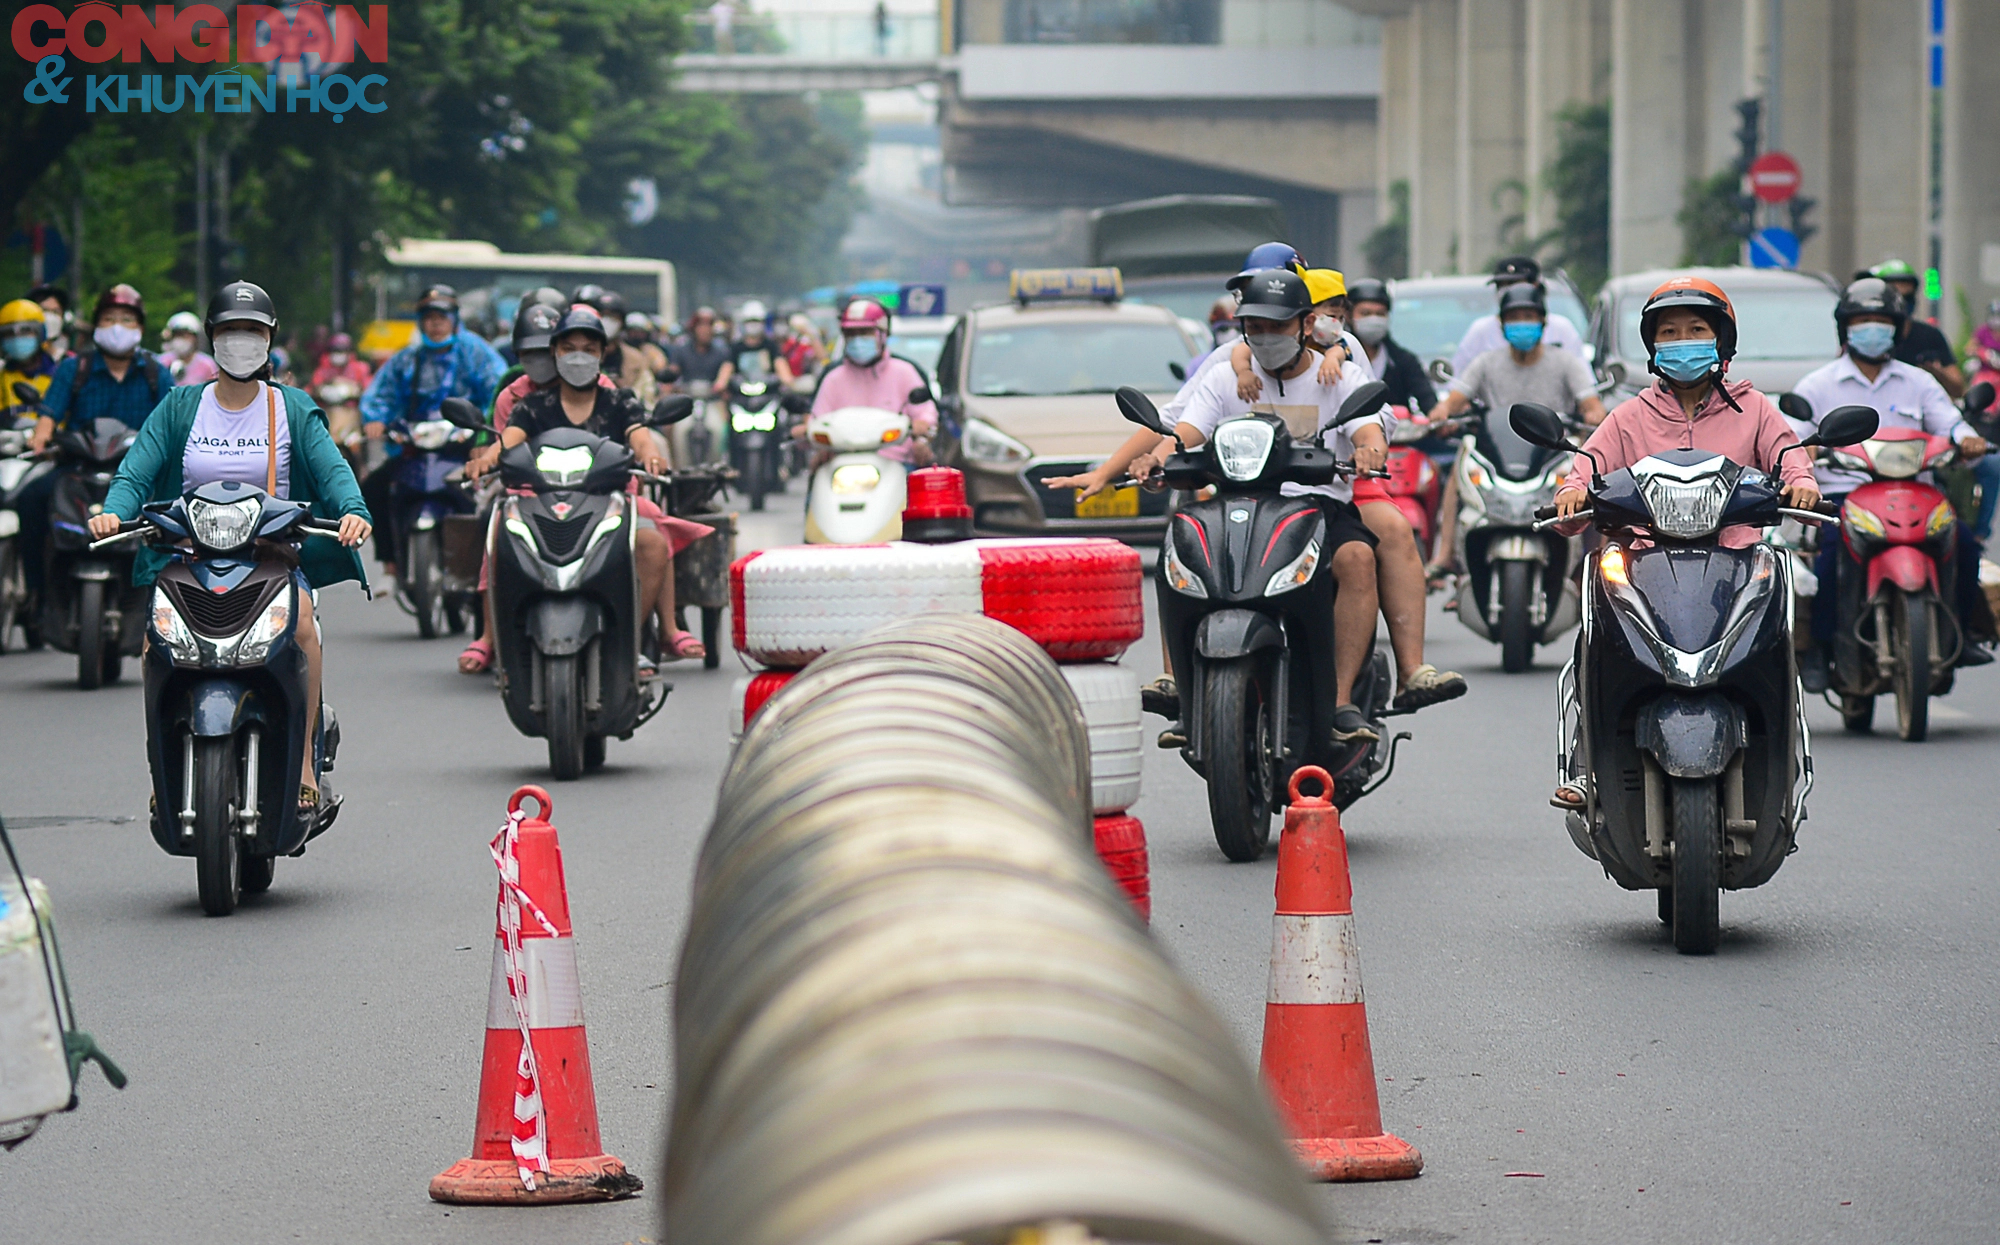 Hà Nội: Giao thông trên đường Nguyễn Trãi lộn xộn sau khi phân làn - Ảnh 4.